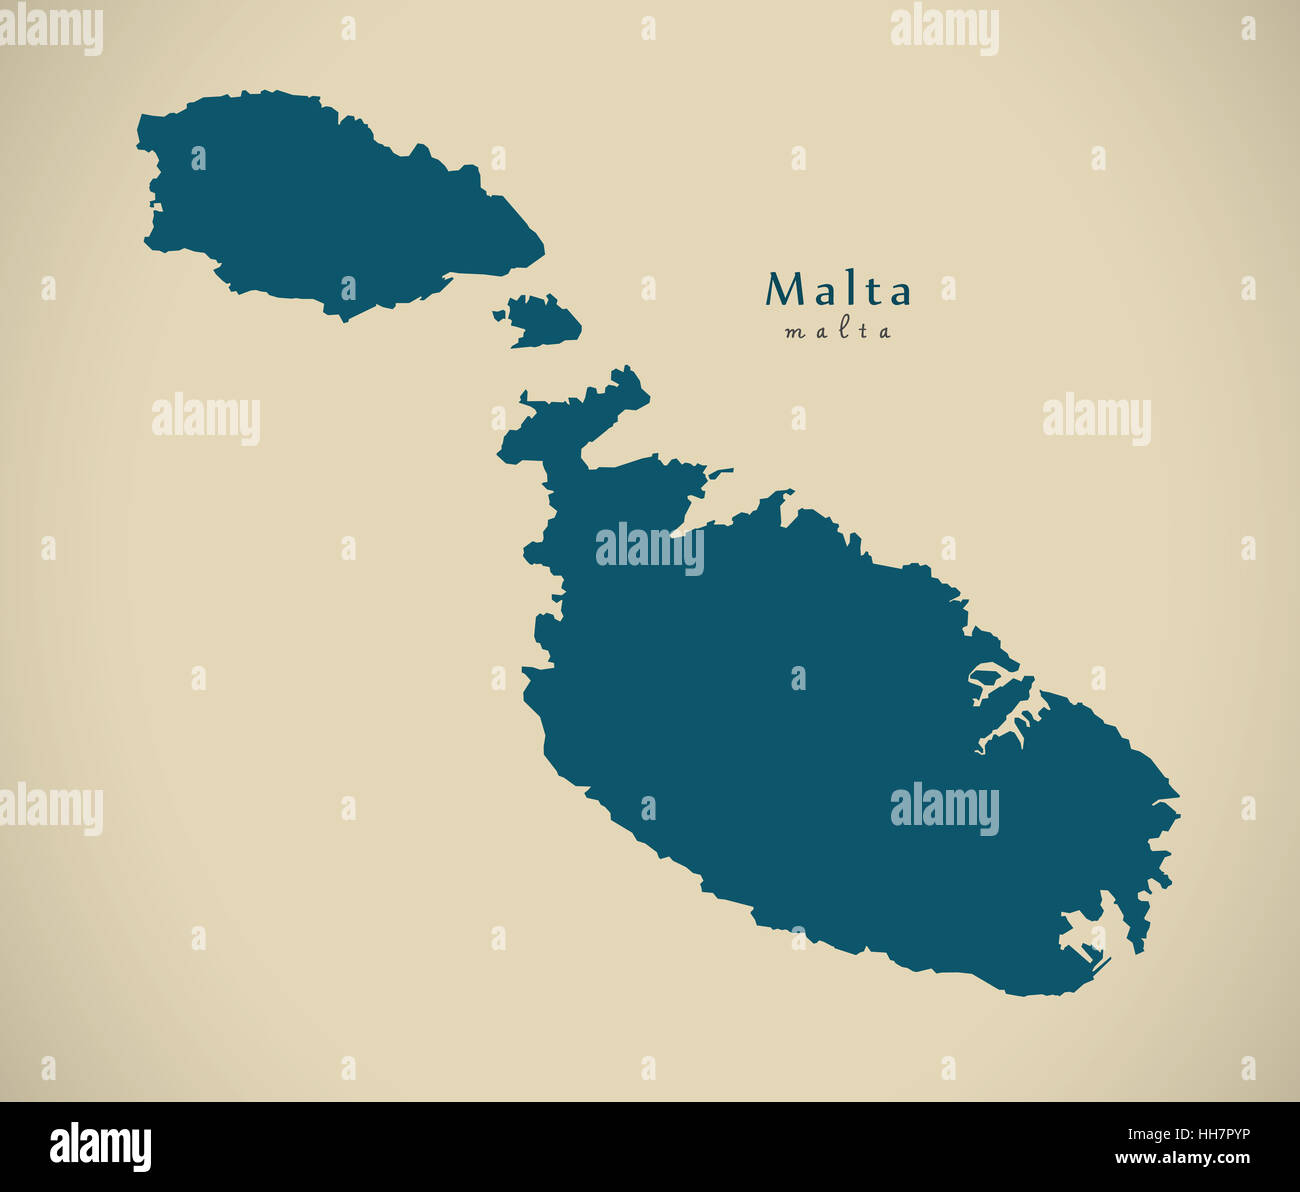 Modern Map - Malta MT illustration Stock Photo